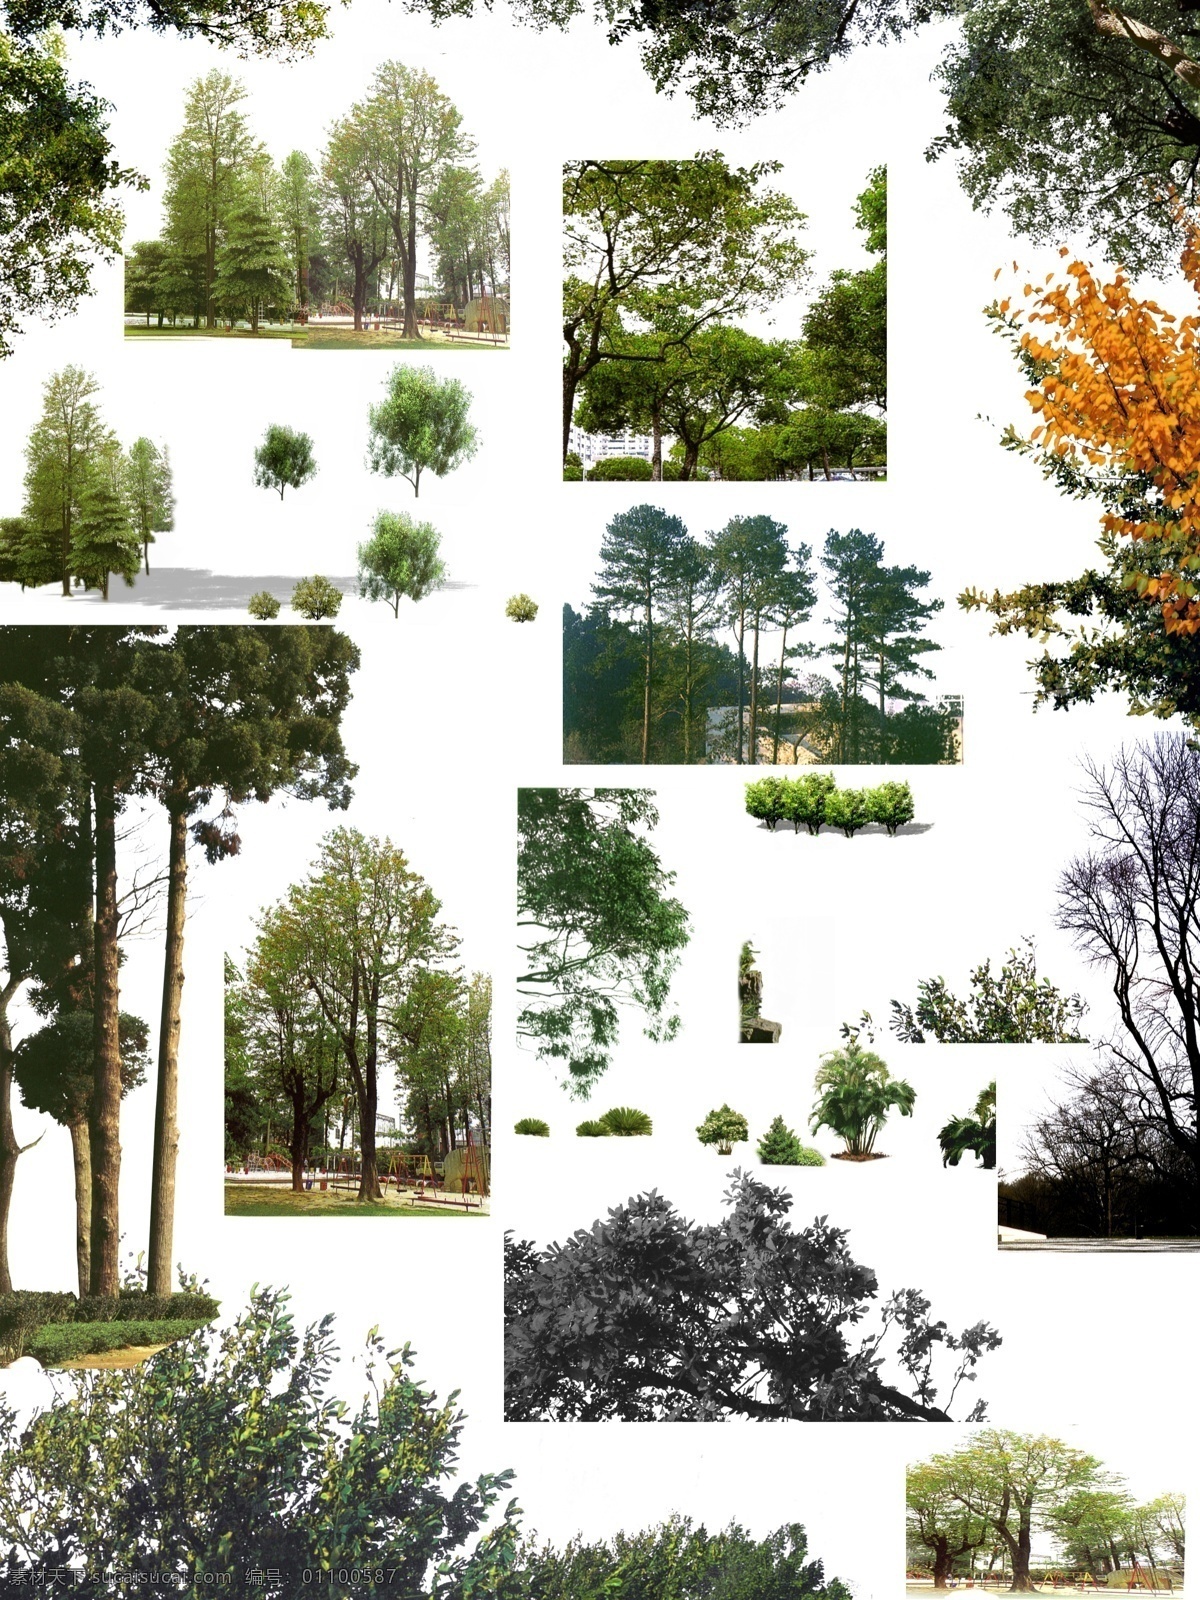 树群和树木 树 树木 树群 多棵 园林 园艺 绿色的树 灌木丛 花坛 分层 环境设计 景观设计 贴图 源文件库